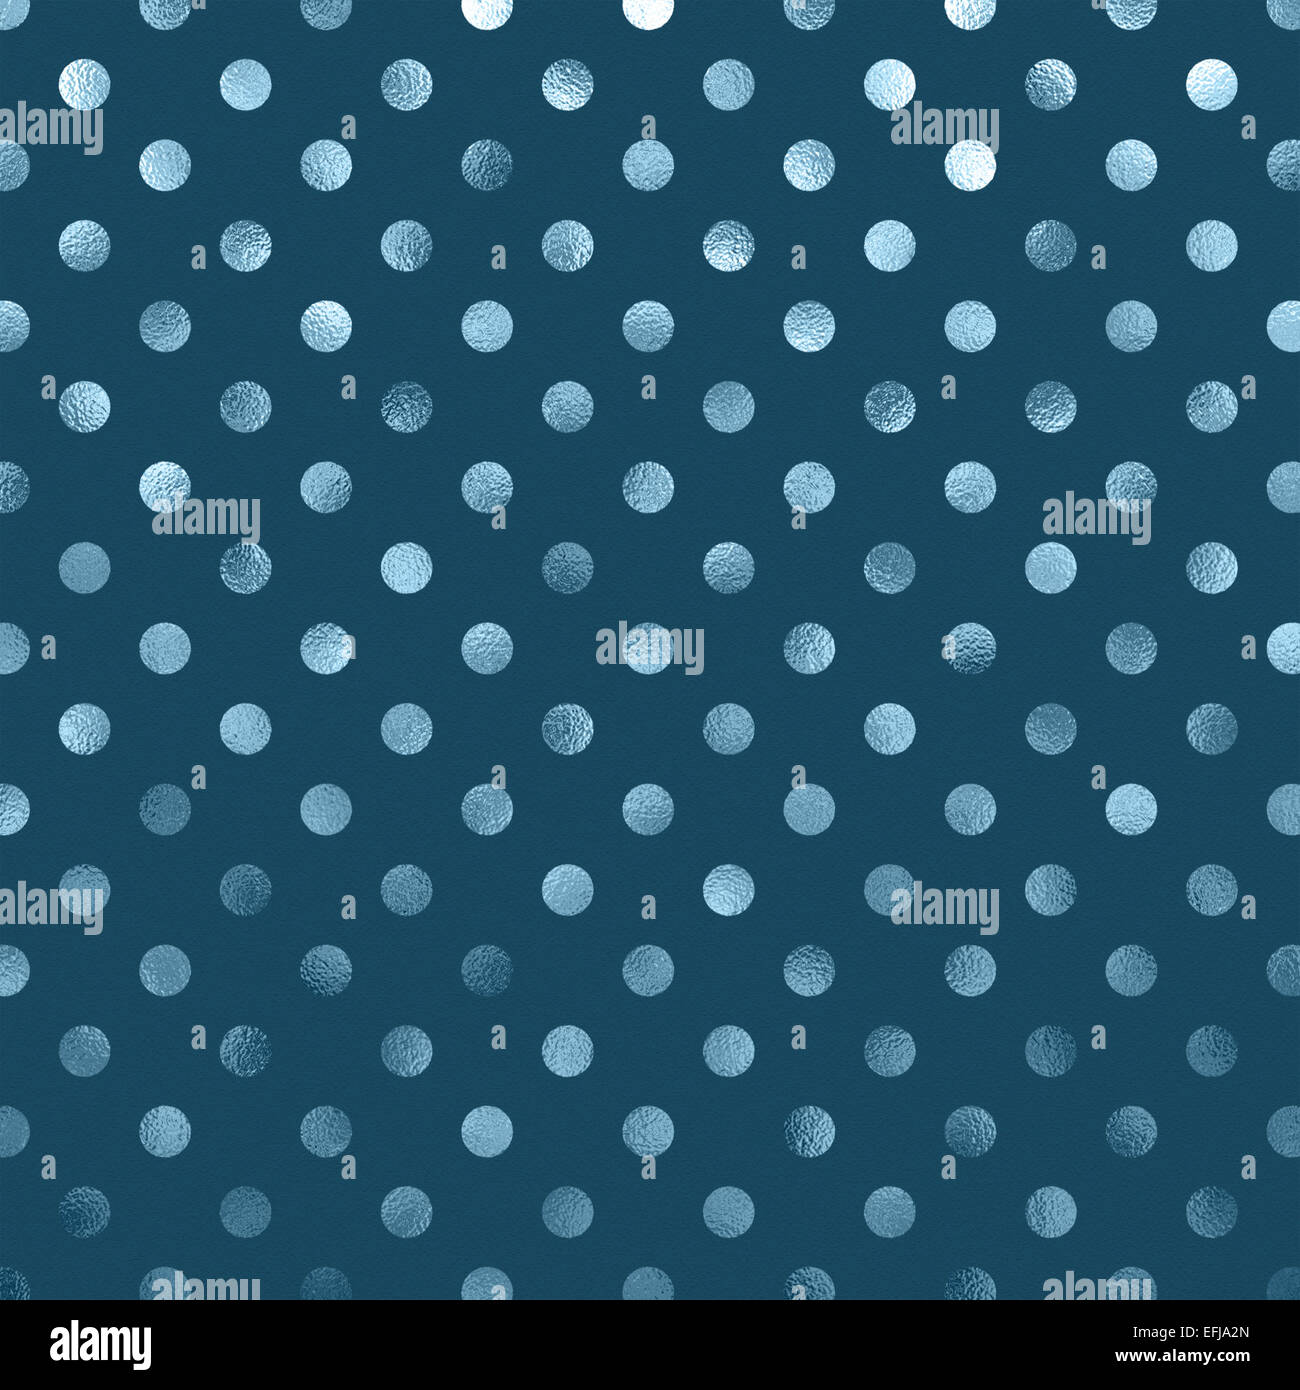 Teal azul pizarra lámina metálica Polka Dot Pattern Swiss Dots papel de textura de fondo de color Foto de stock